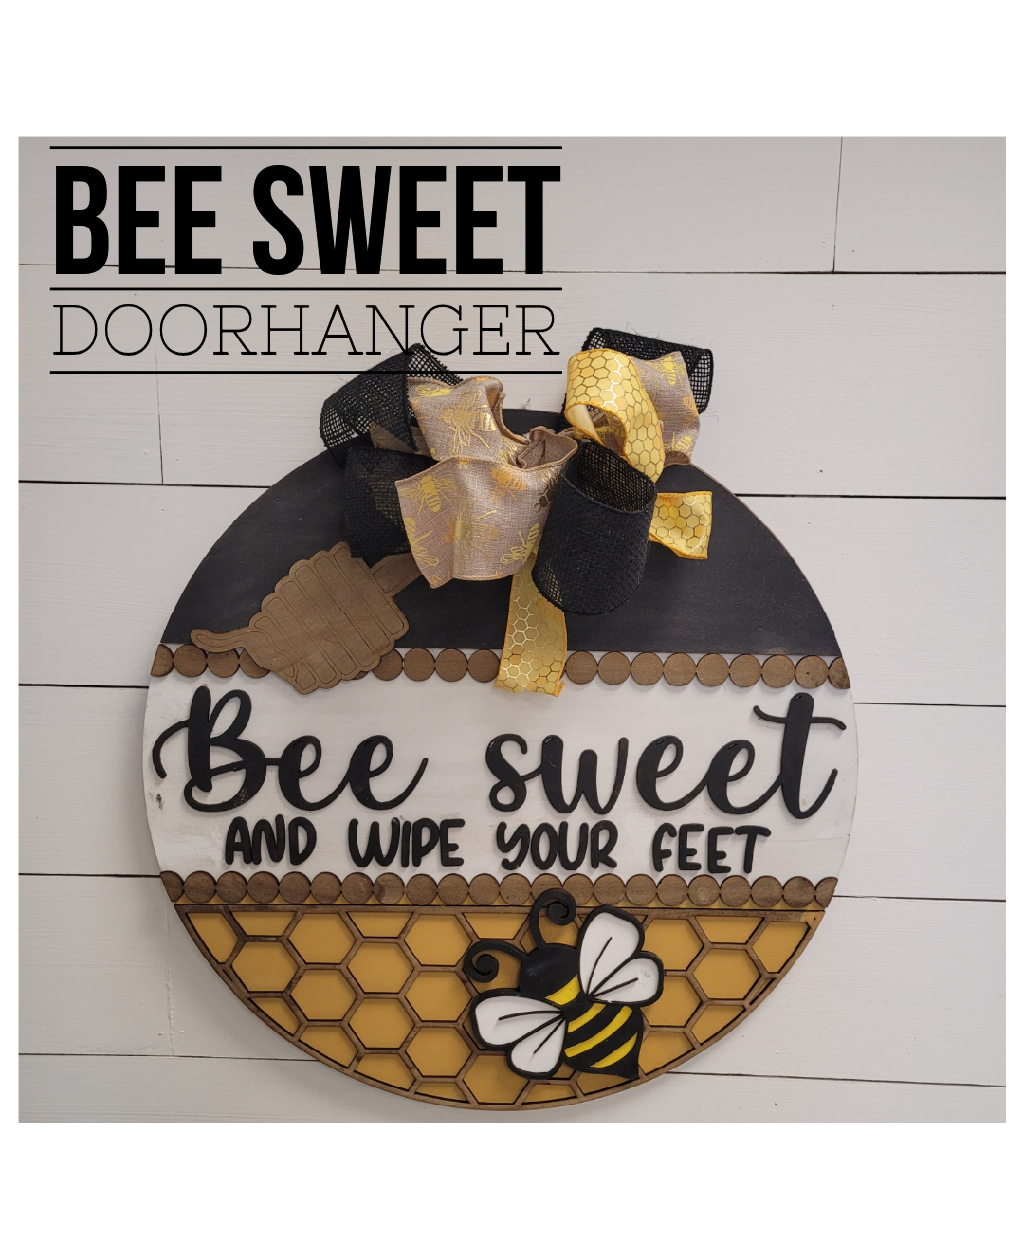 Bee Sweet wipe your feet Doorhanger